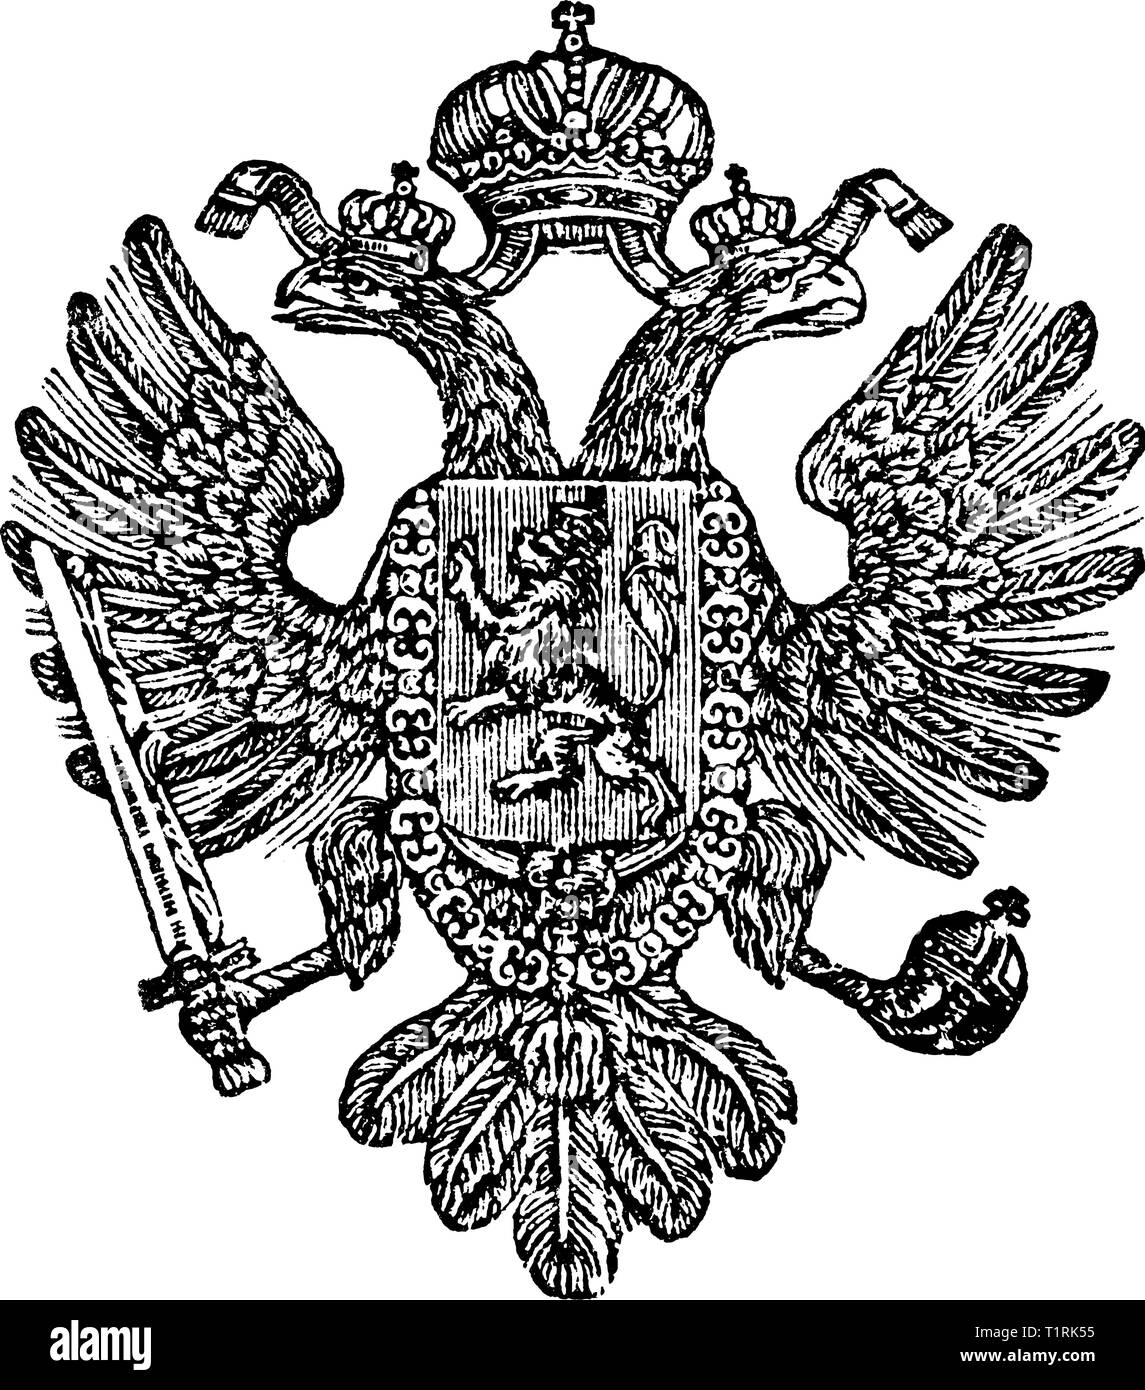 Vintage linea antico disegno o disegni incisi di stemma del regno di Boemia come parte dell impero austriaco. Illustrazione Vettoriale